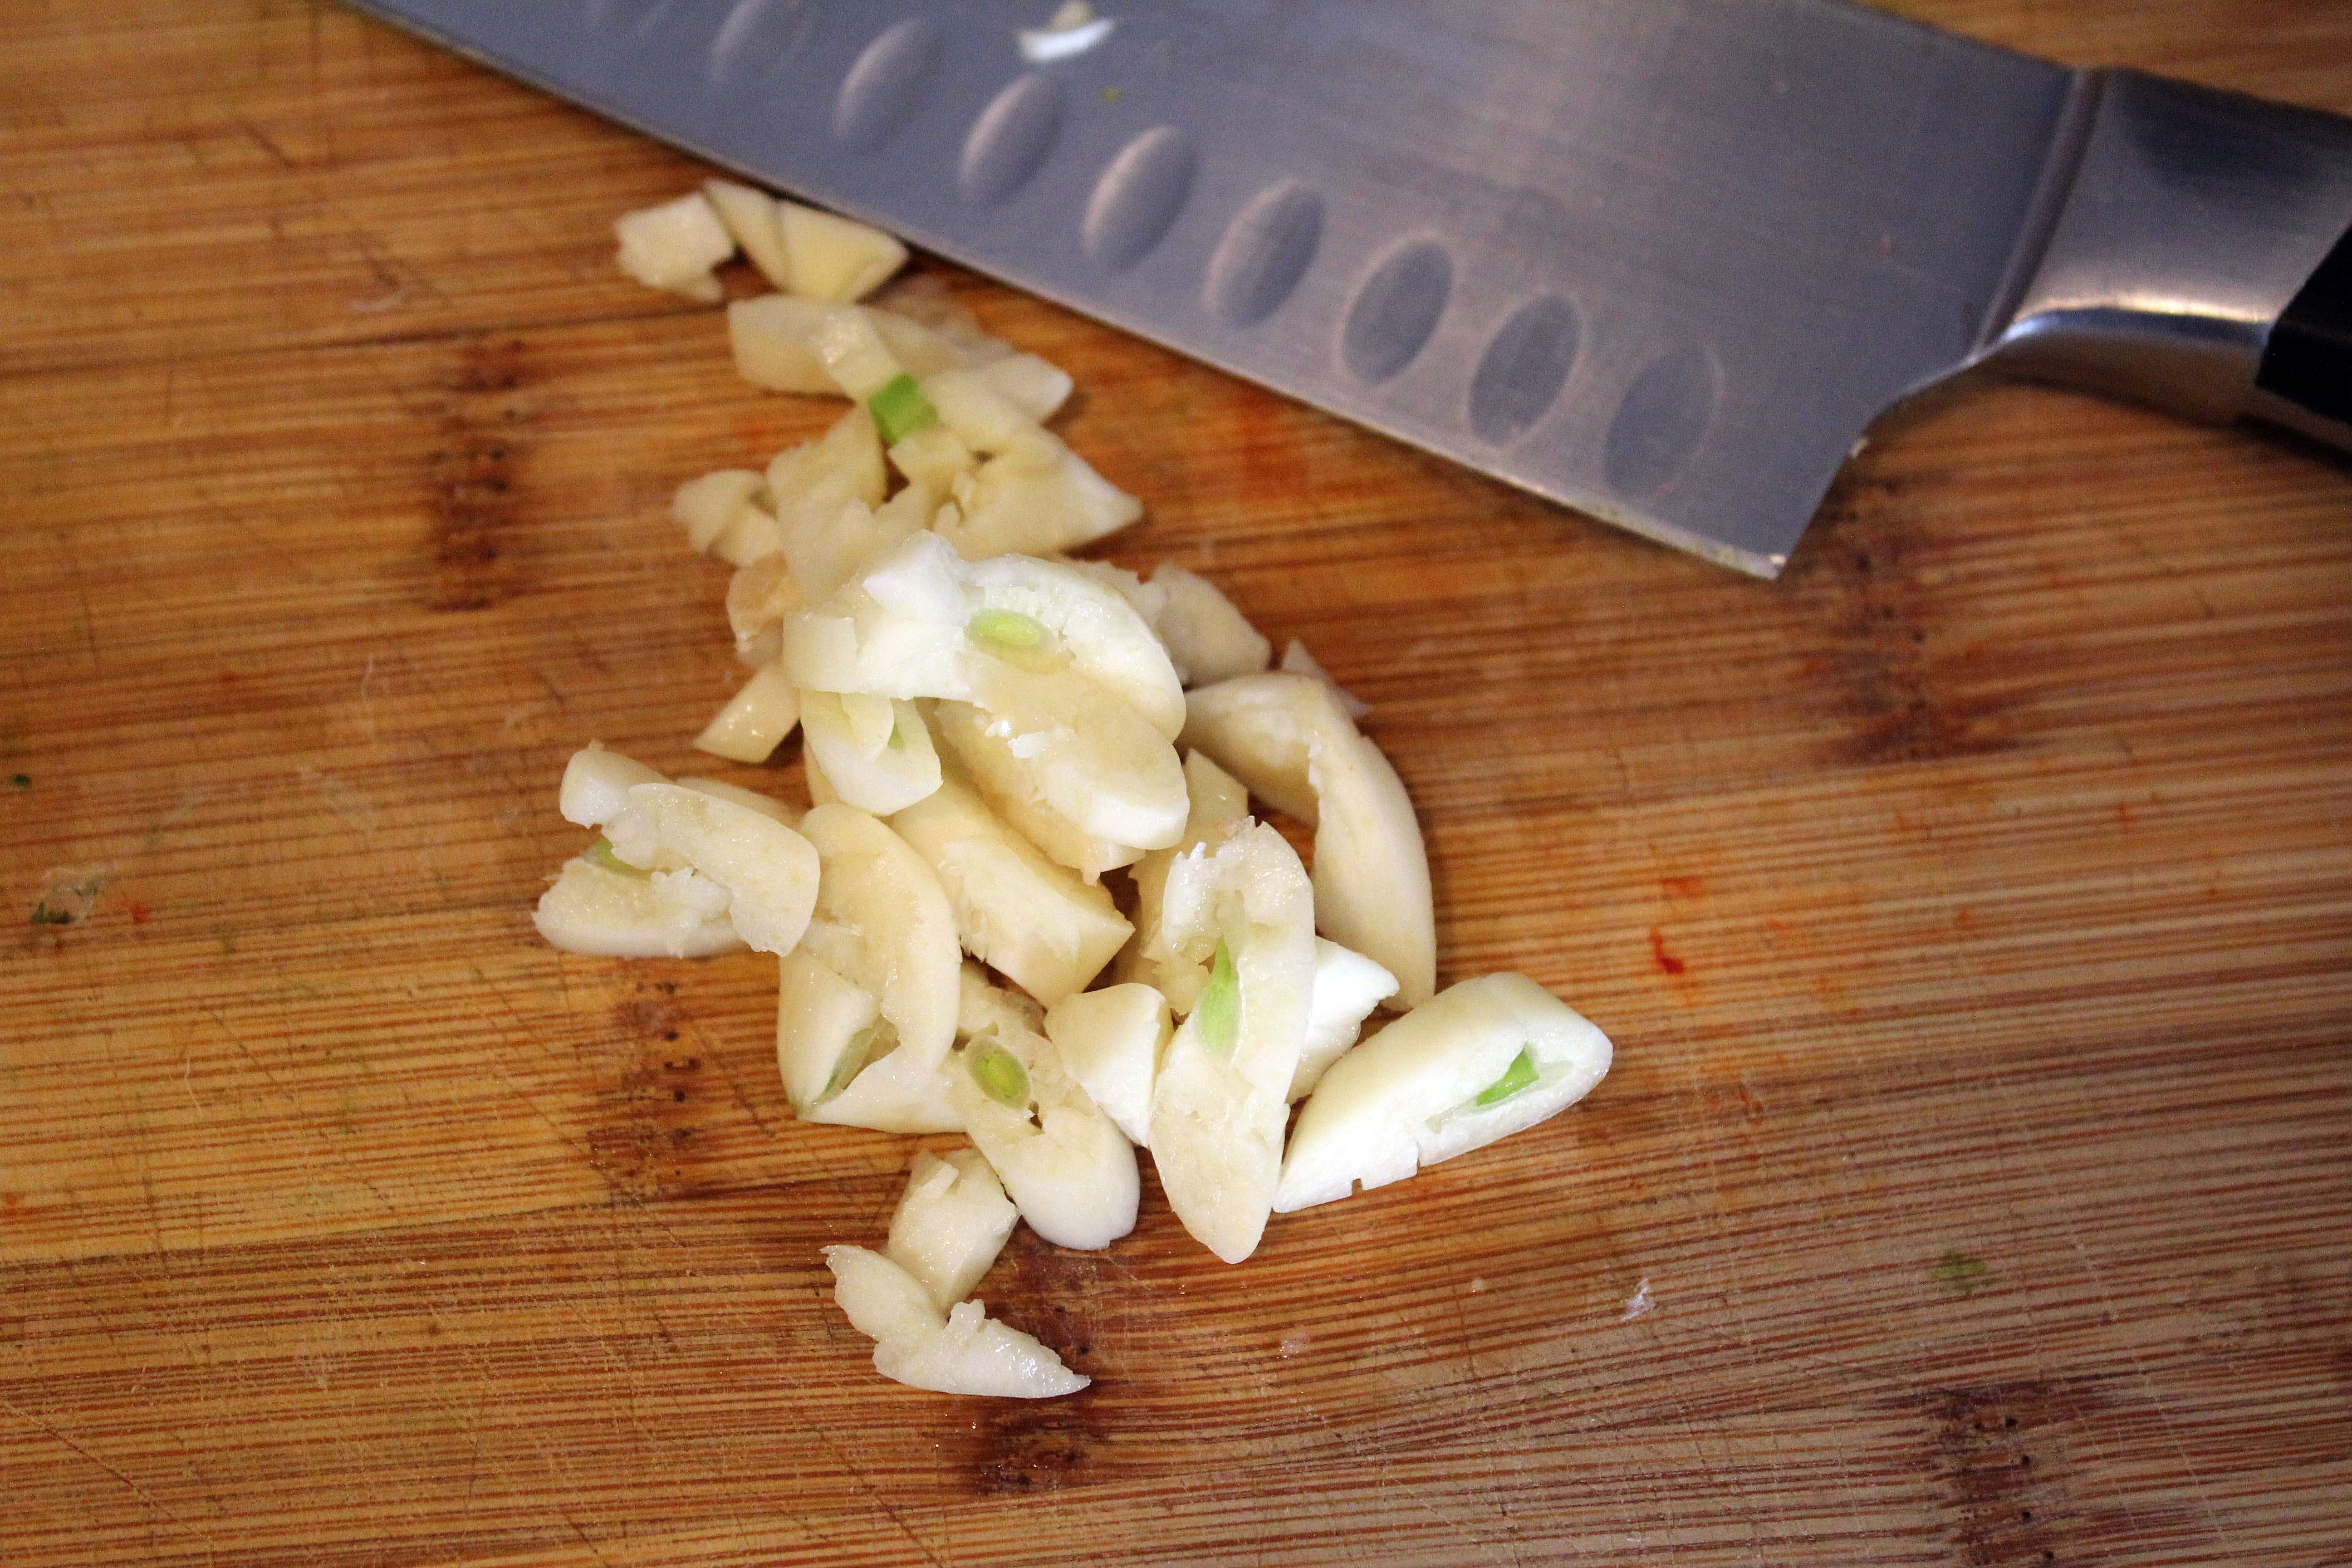 Roughly chop garlic